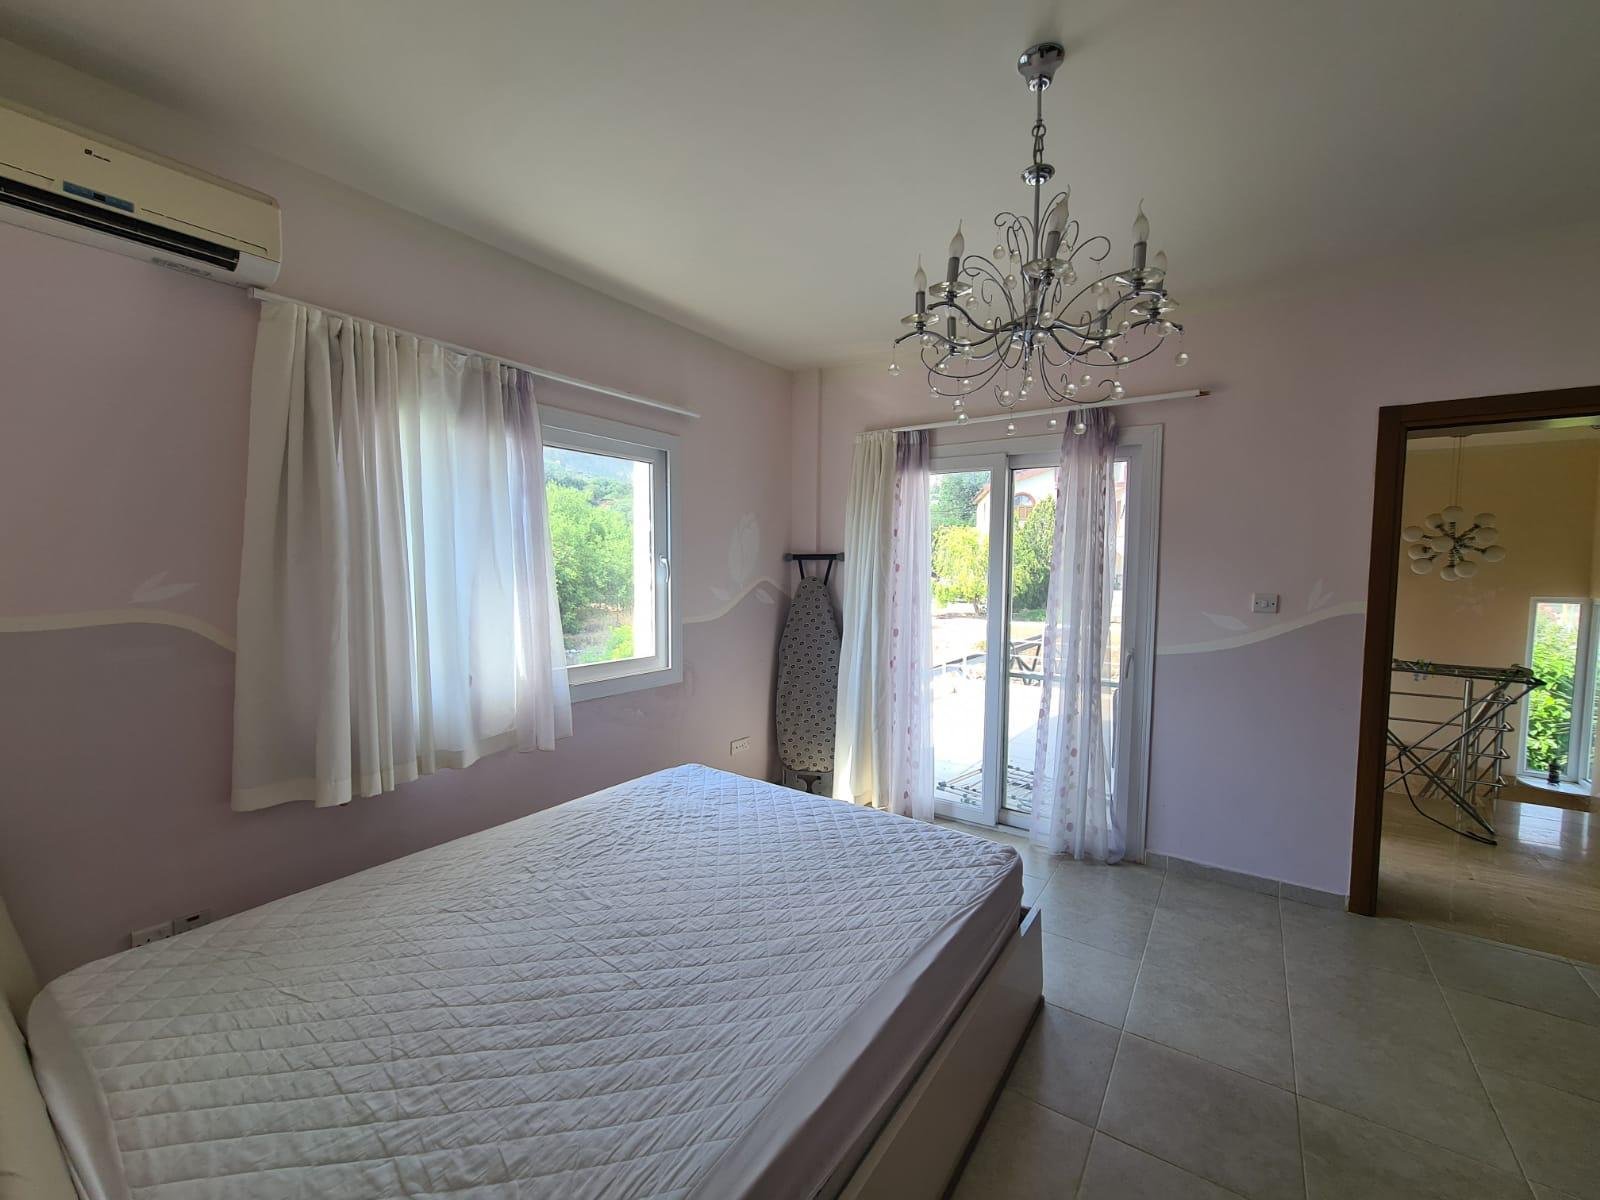 3 bedroom villa for sale in Kyrenia, Karshiyaka-c8356da1-3251-4406-bdc6-07bffce3c441